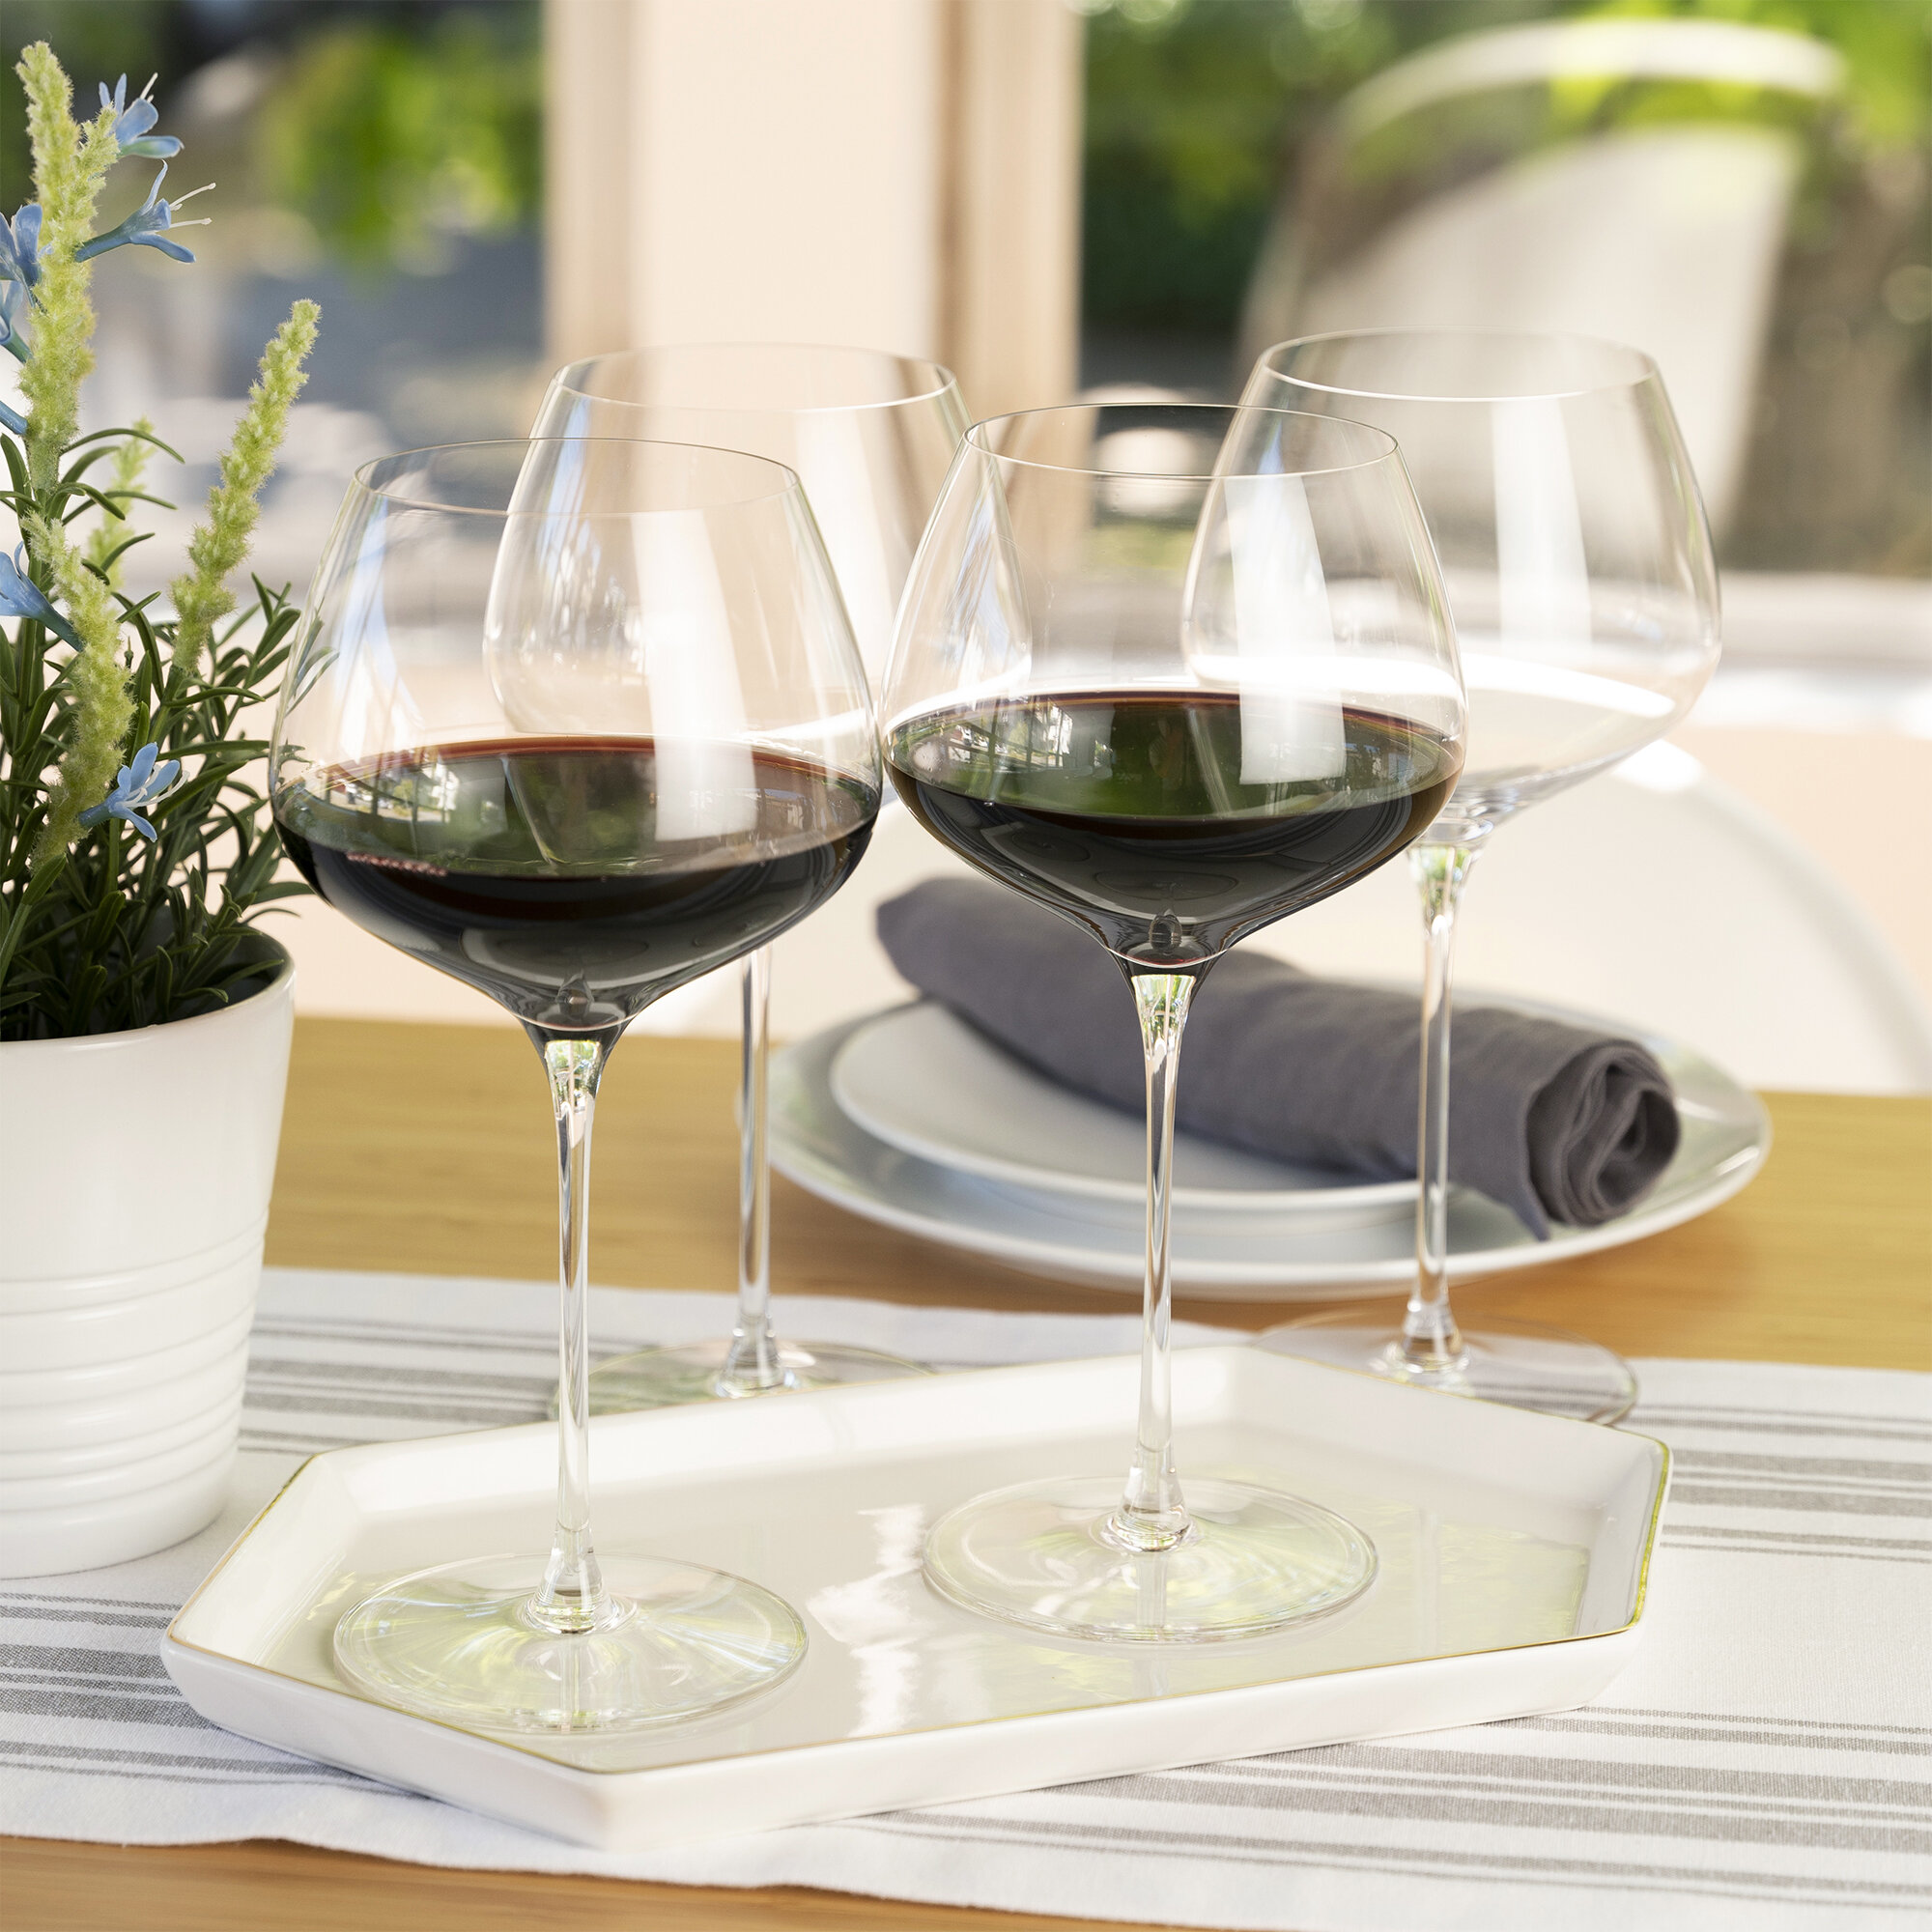 Spiegelau Willsberger Anniversary 26 oz. Lead Red Wine & Reviews | Wayfair